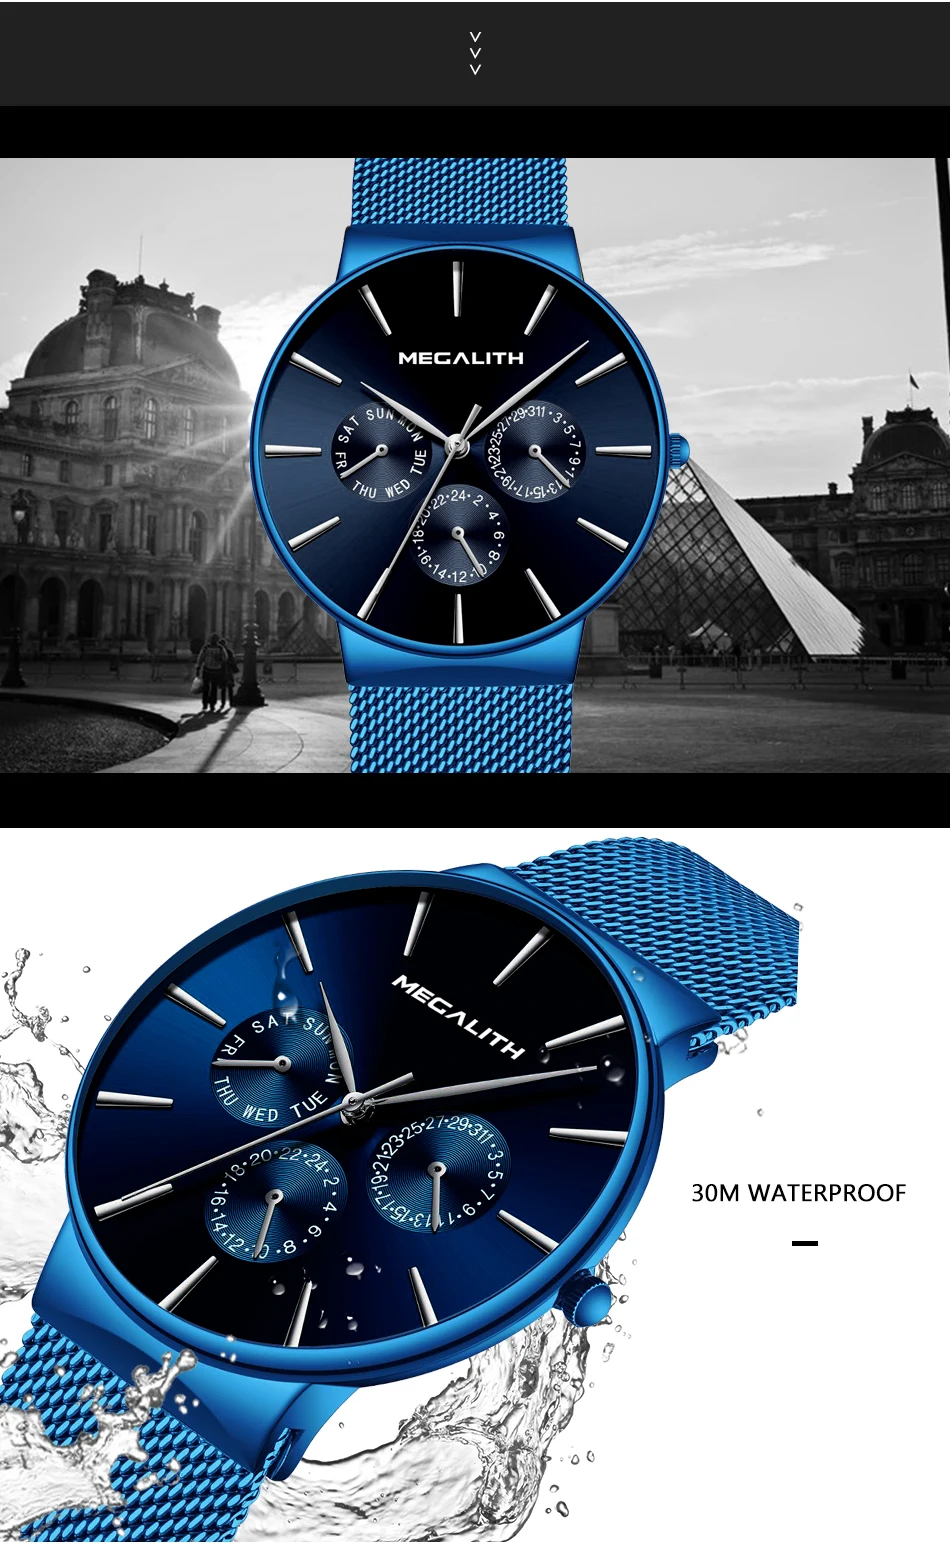 MEGALITH мужские часы с хронографом Новое Поступление Топ бренд класса люкс сетчатый ремешок спортивные водонепроницаемые кварцевые часы для мужчин Reloj Hombre 0047